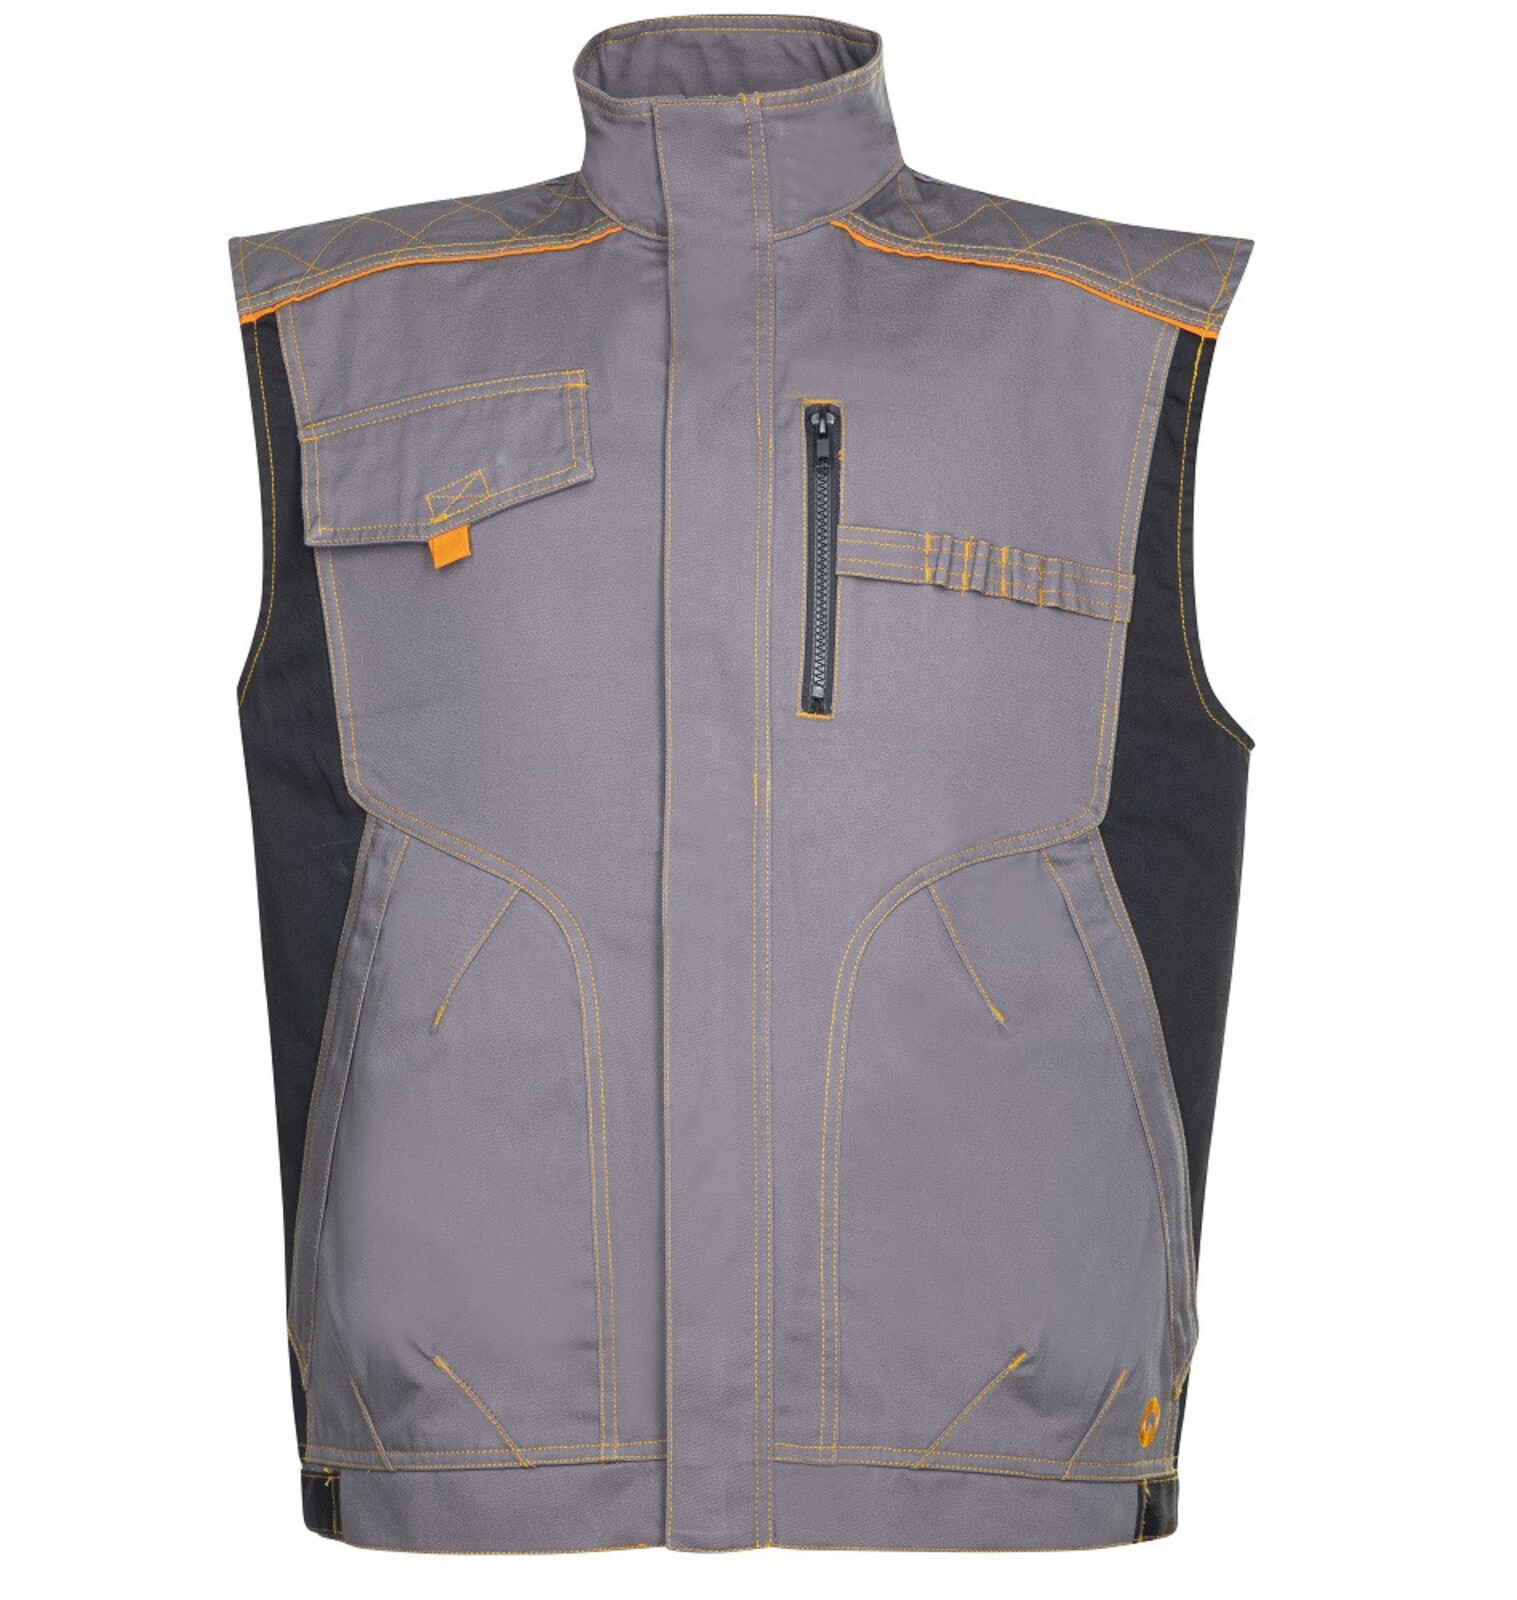 Pánska montérková vesta Ardon Vision - veľkosť: 64, farba: sivá/oranžová